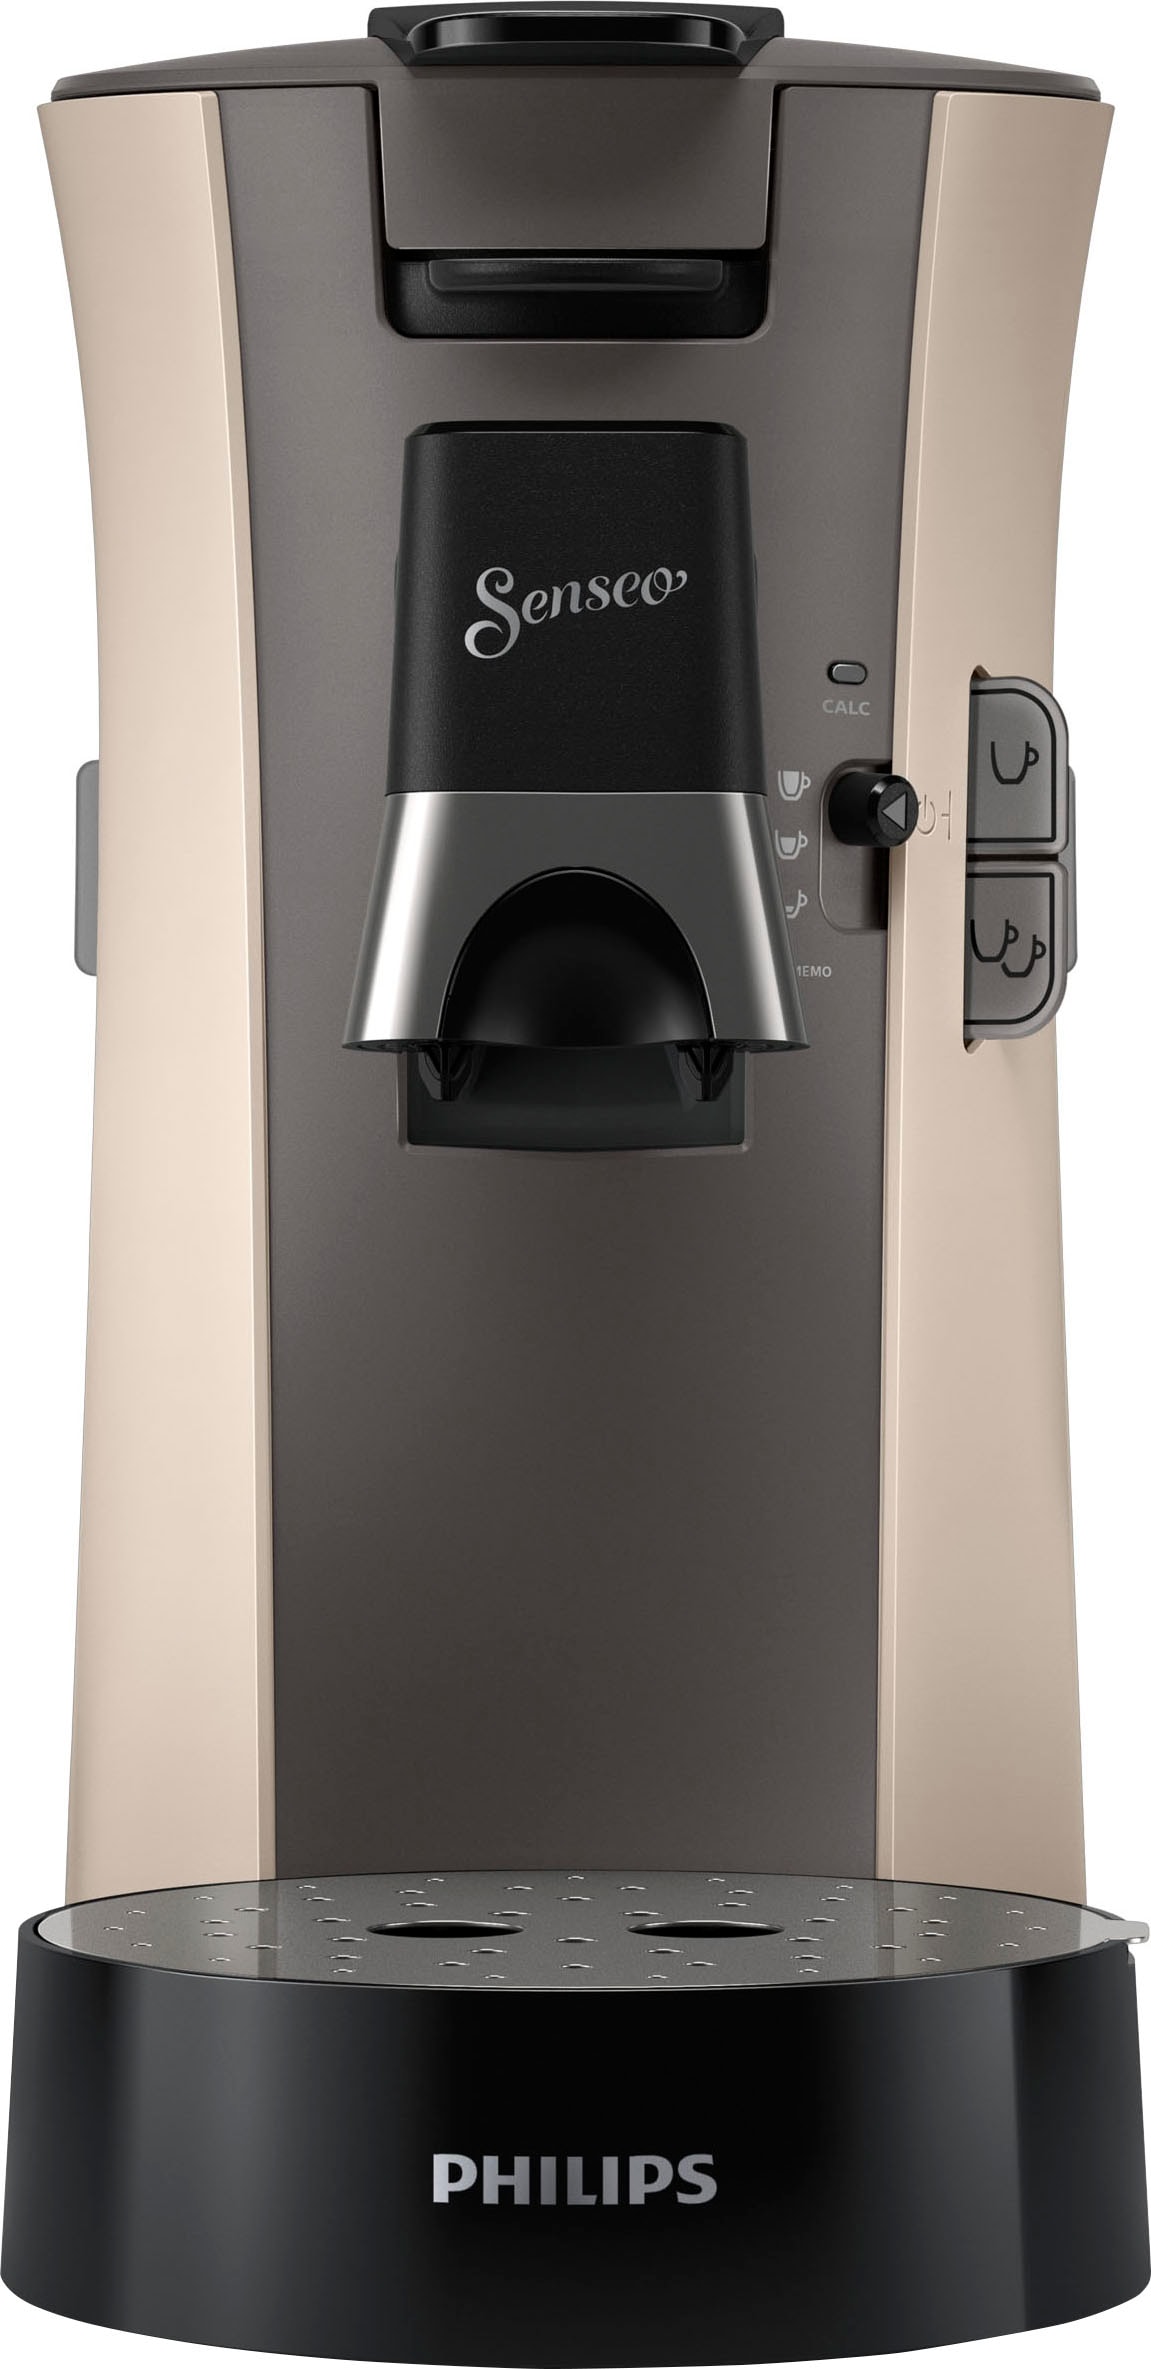 Philips Senseo Kaffeepadmaschine »Select CSA240/30, aus 21% recyceltem  Plastik, +3 Kaffeespezialitäten«, Memo-Funktion, inkl. Gratis-Zugaben im  Wert von € 14,- UVP online bestellen